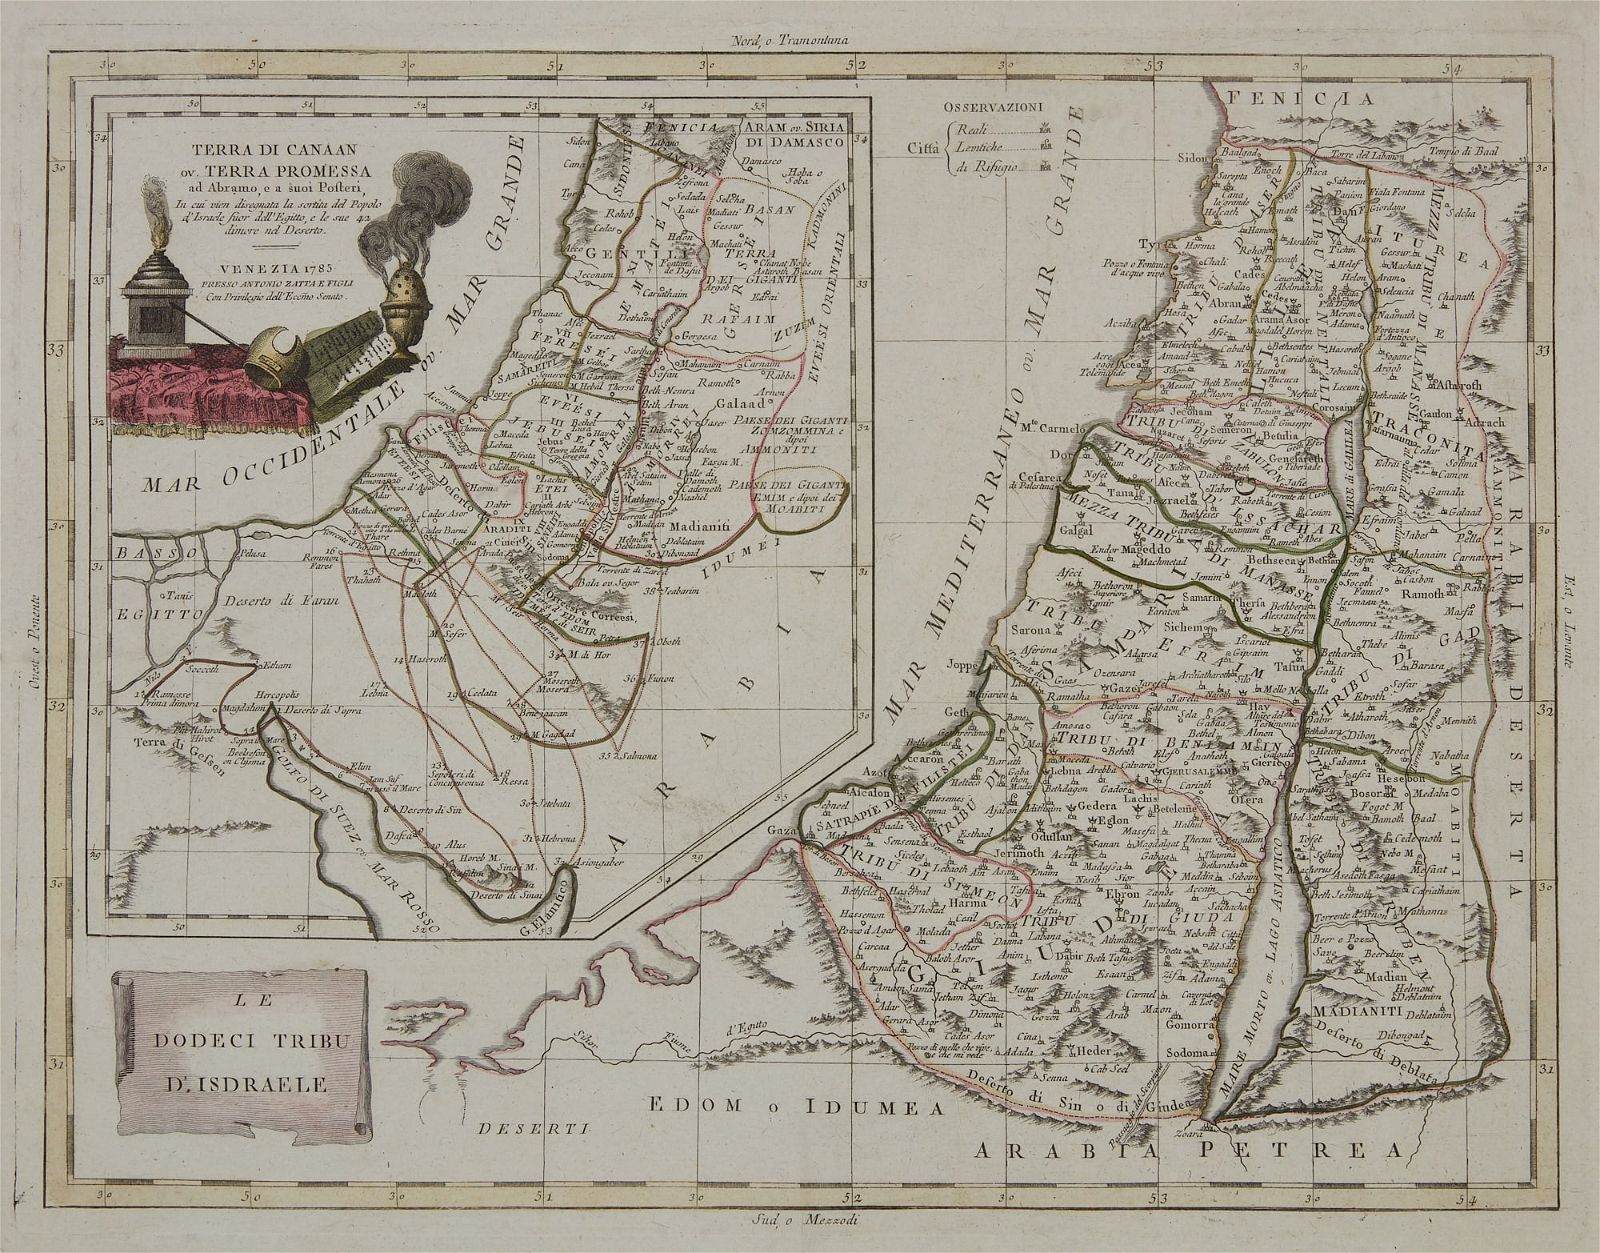 A 1785 ANTONIO ZATTA MAP OF THE